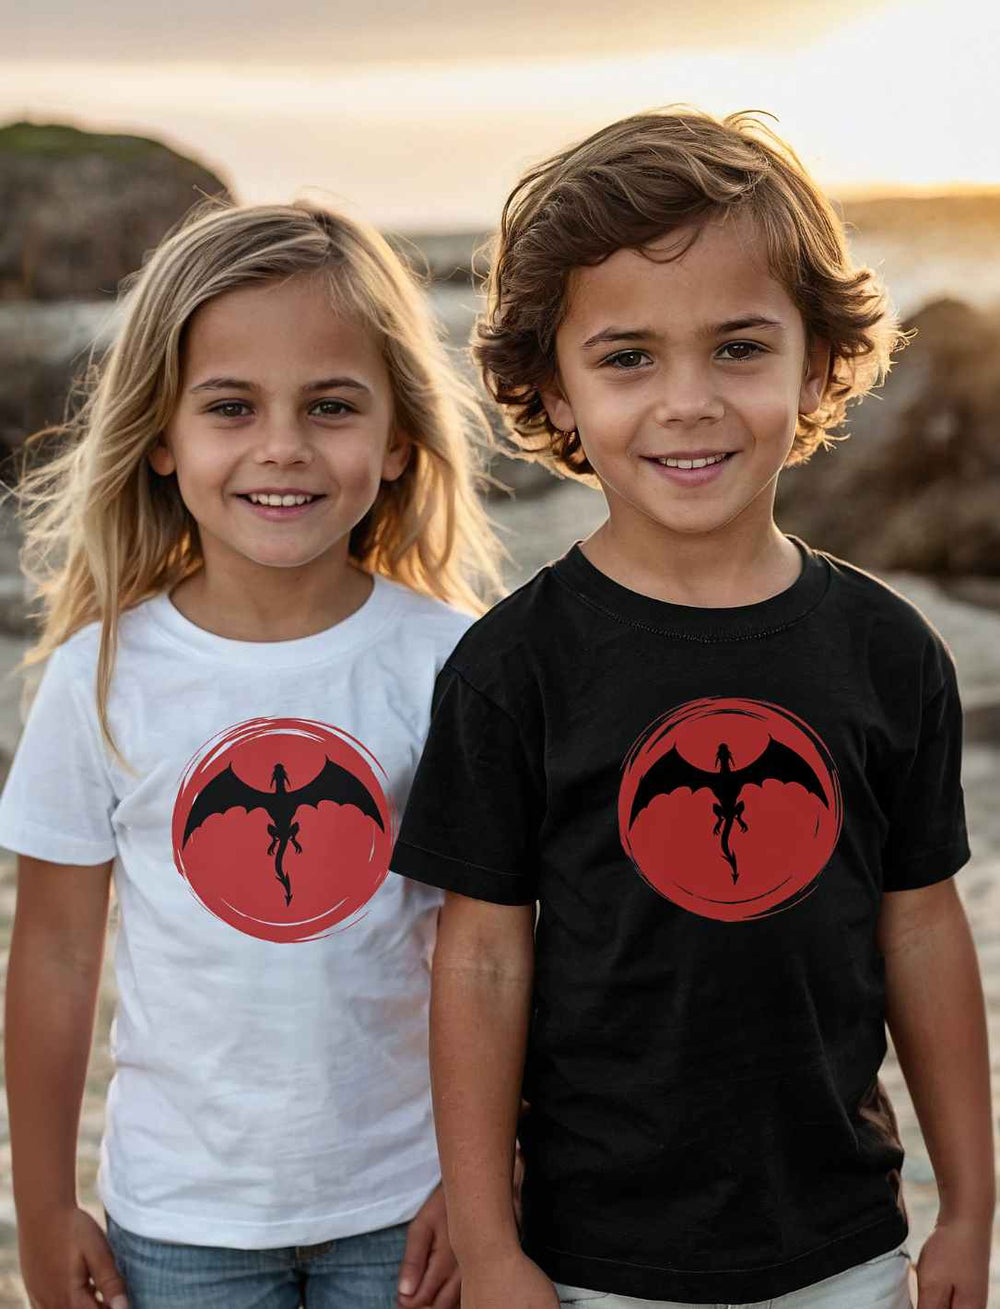 Zwei Kinder am Strand, lächelnd in 'Saga of the Dragon' T-Shirts, das Mädchen in Weiß und der Junge in Schwarz, verkörpern spielerisch den Geist von Abenteuer und Freundschaft.